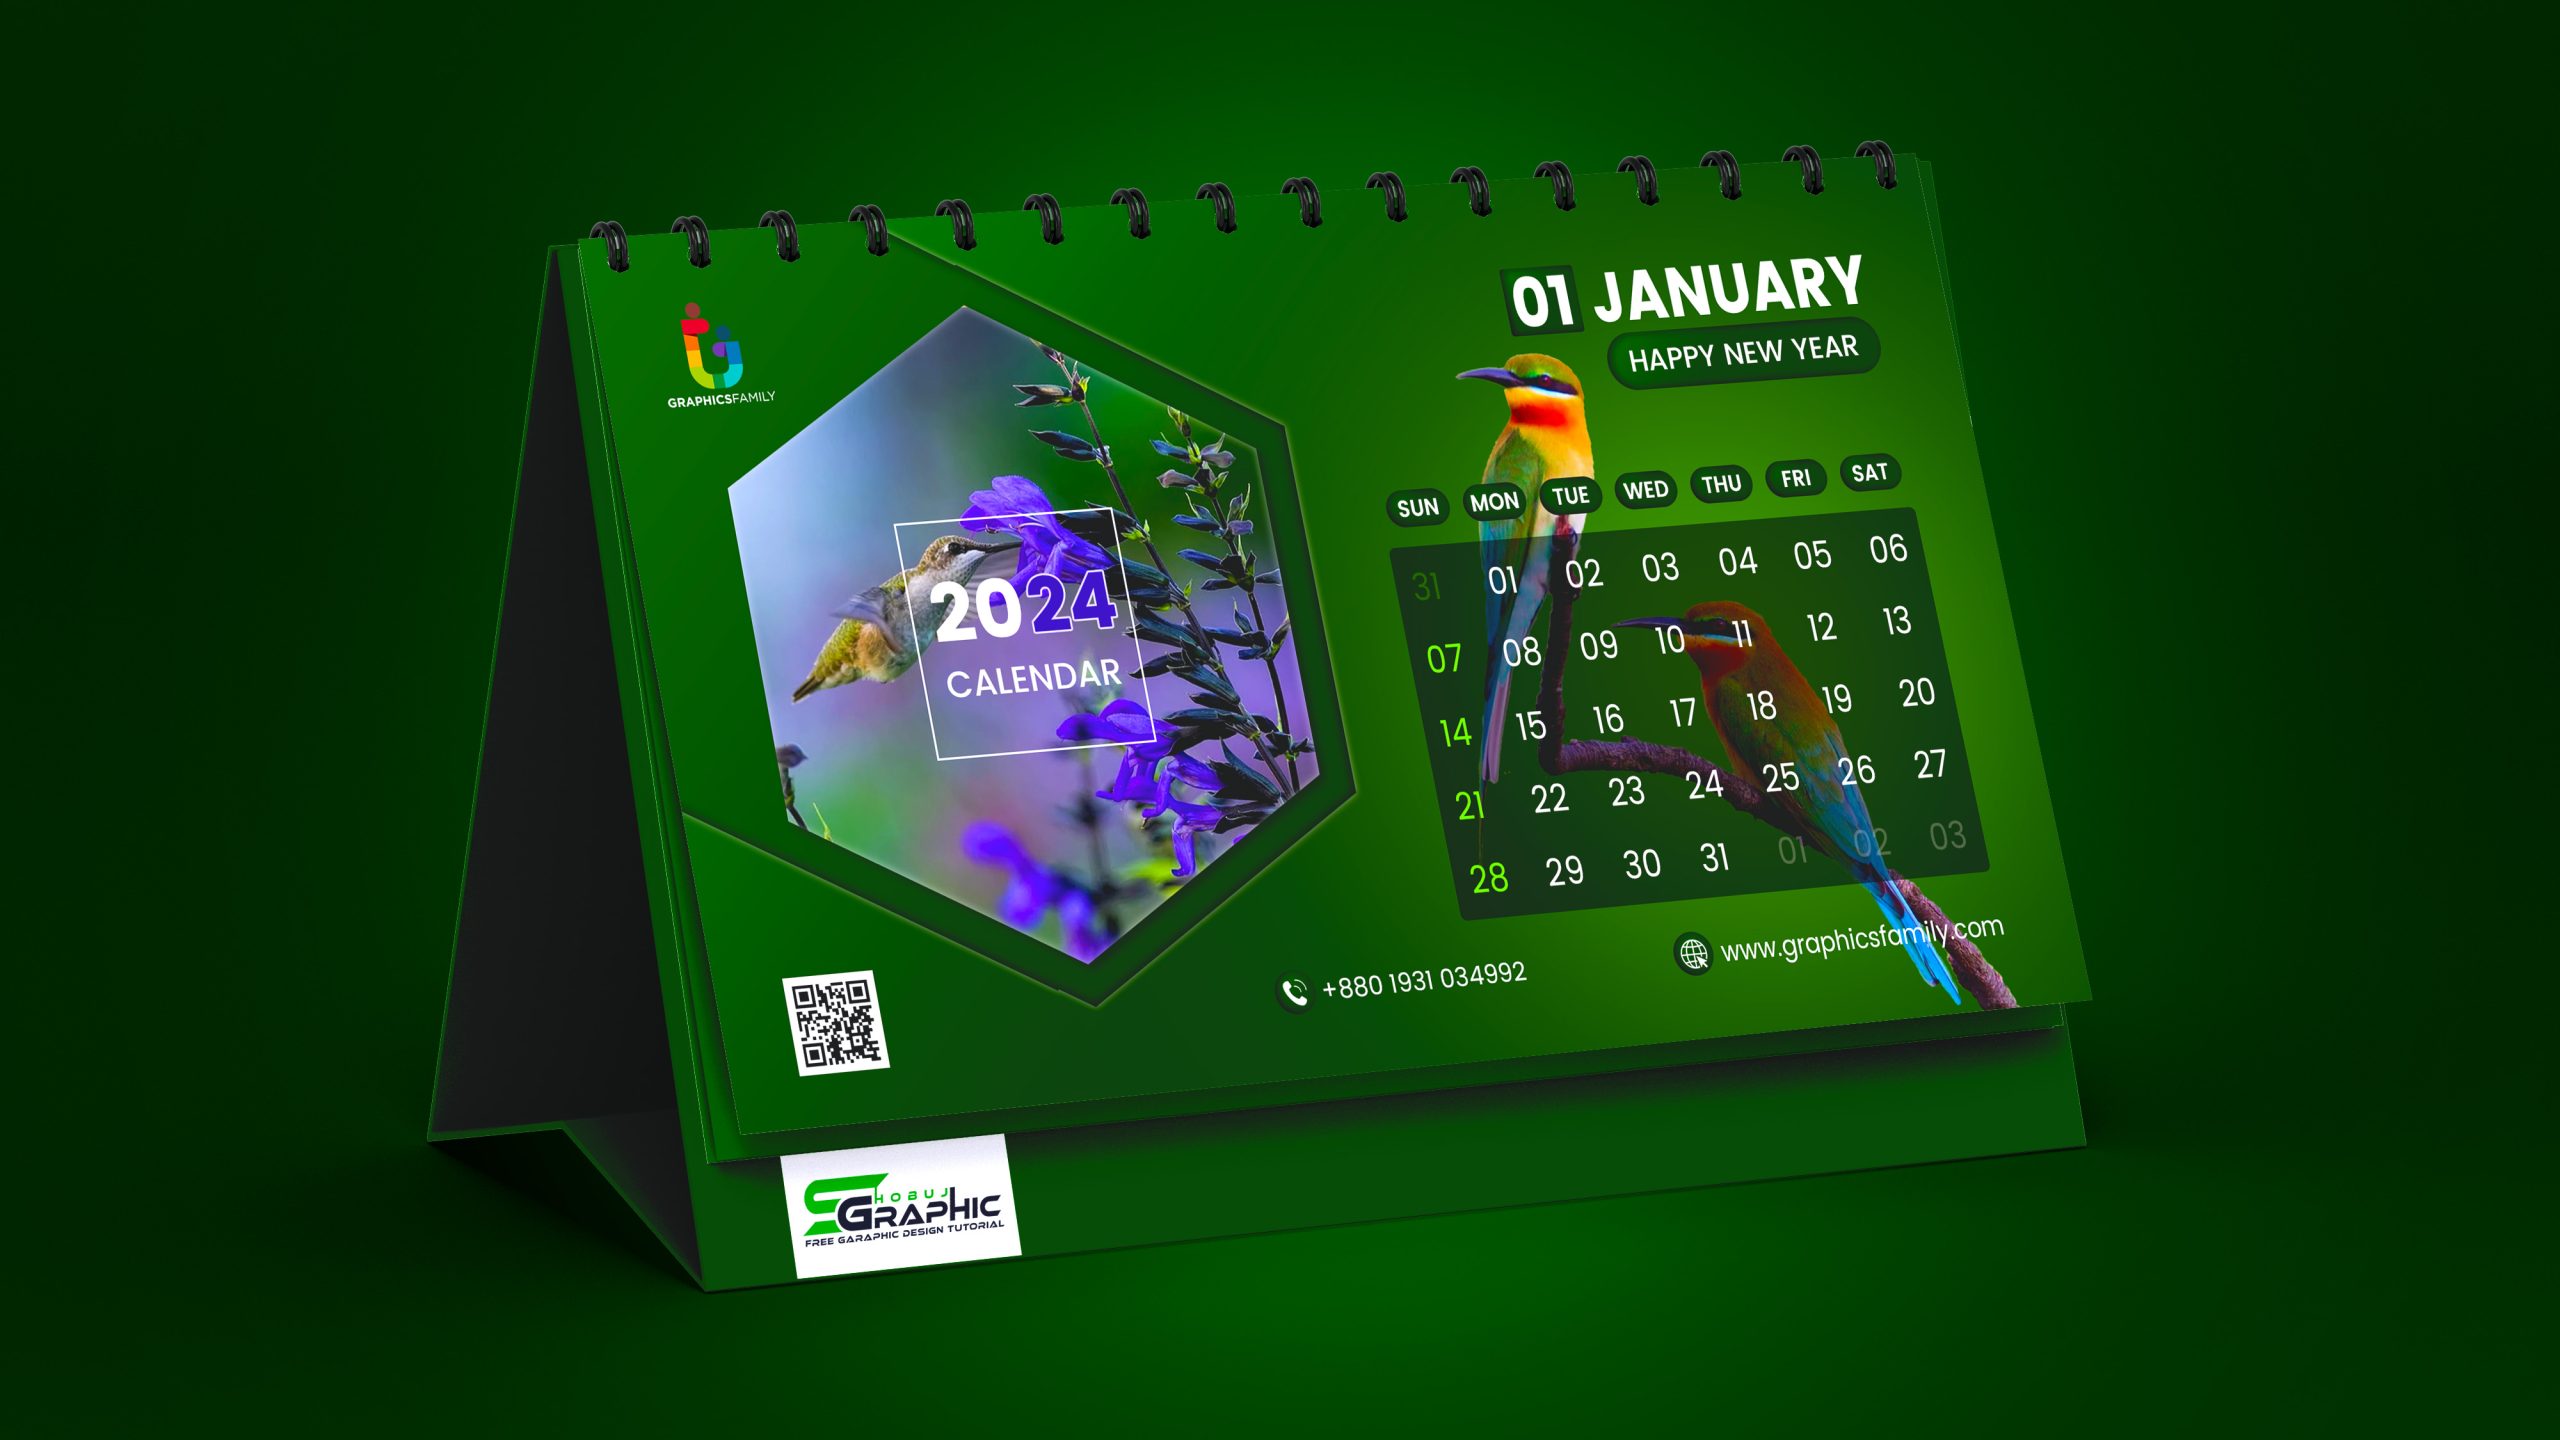 2024 Calendar Template Psd Free Download Pdf Form February 2024 Calendar